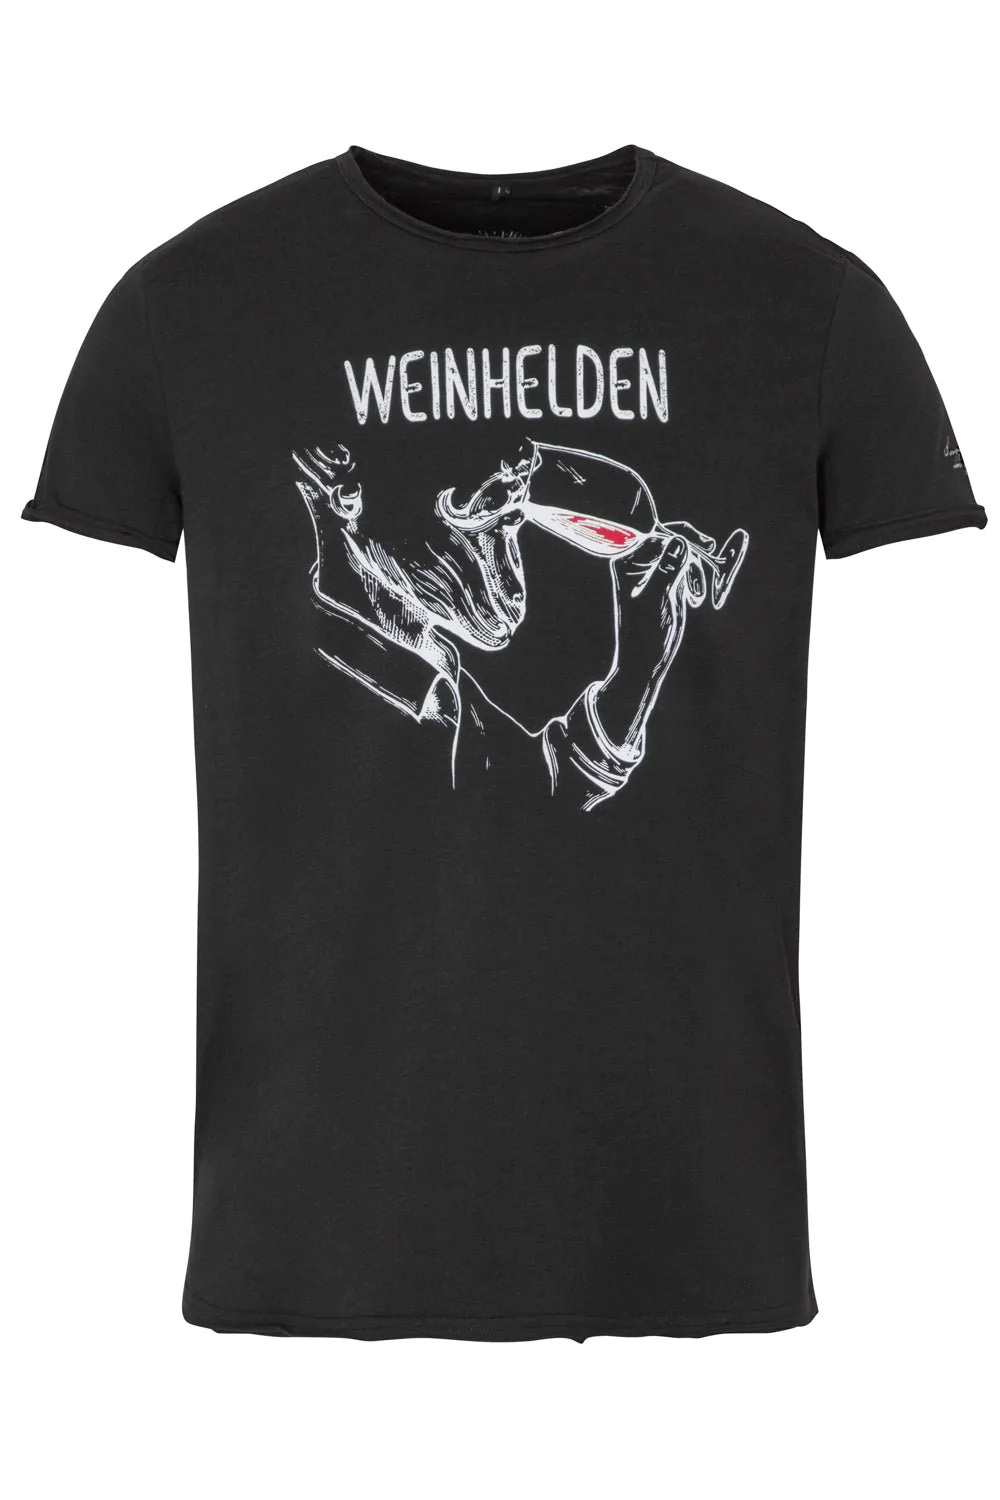 T-Shirt Weinhelden